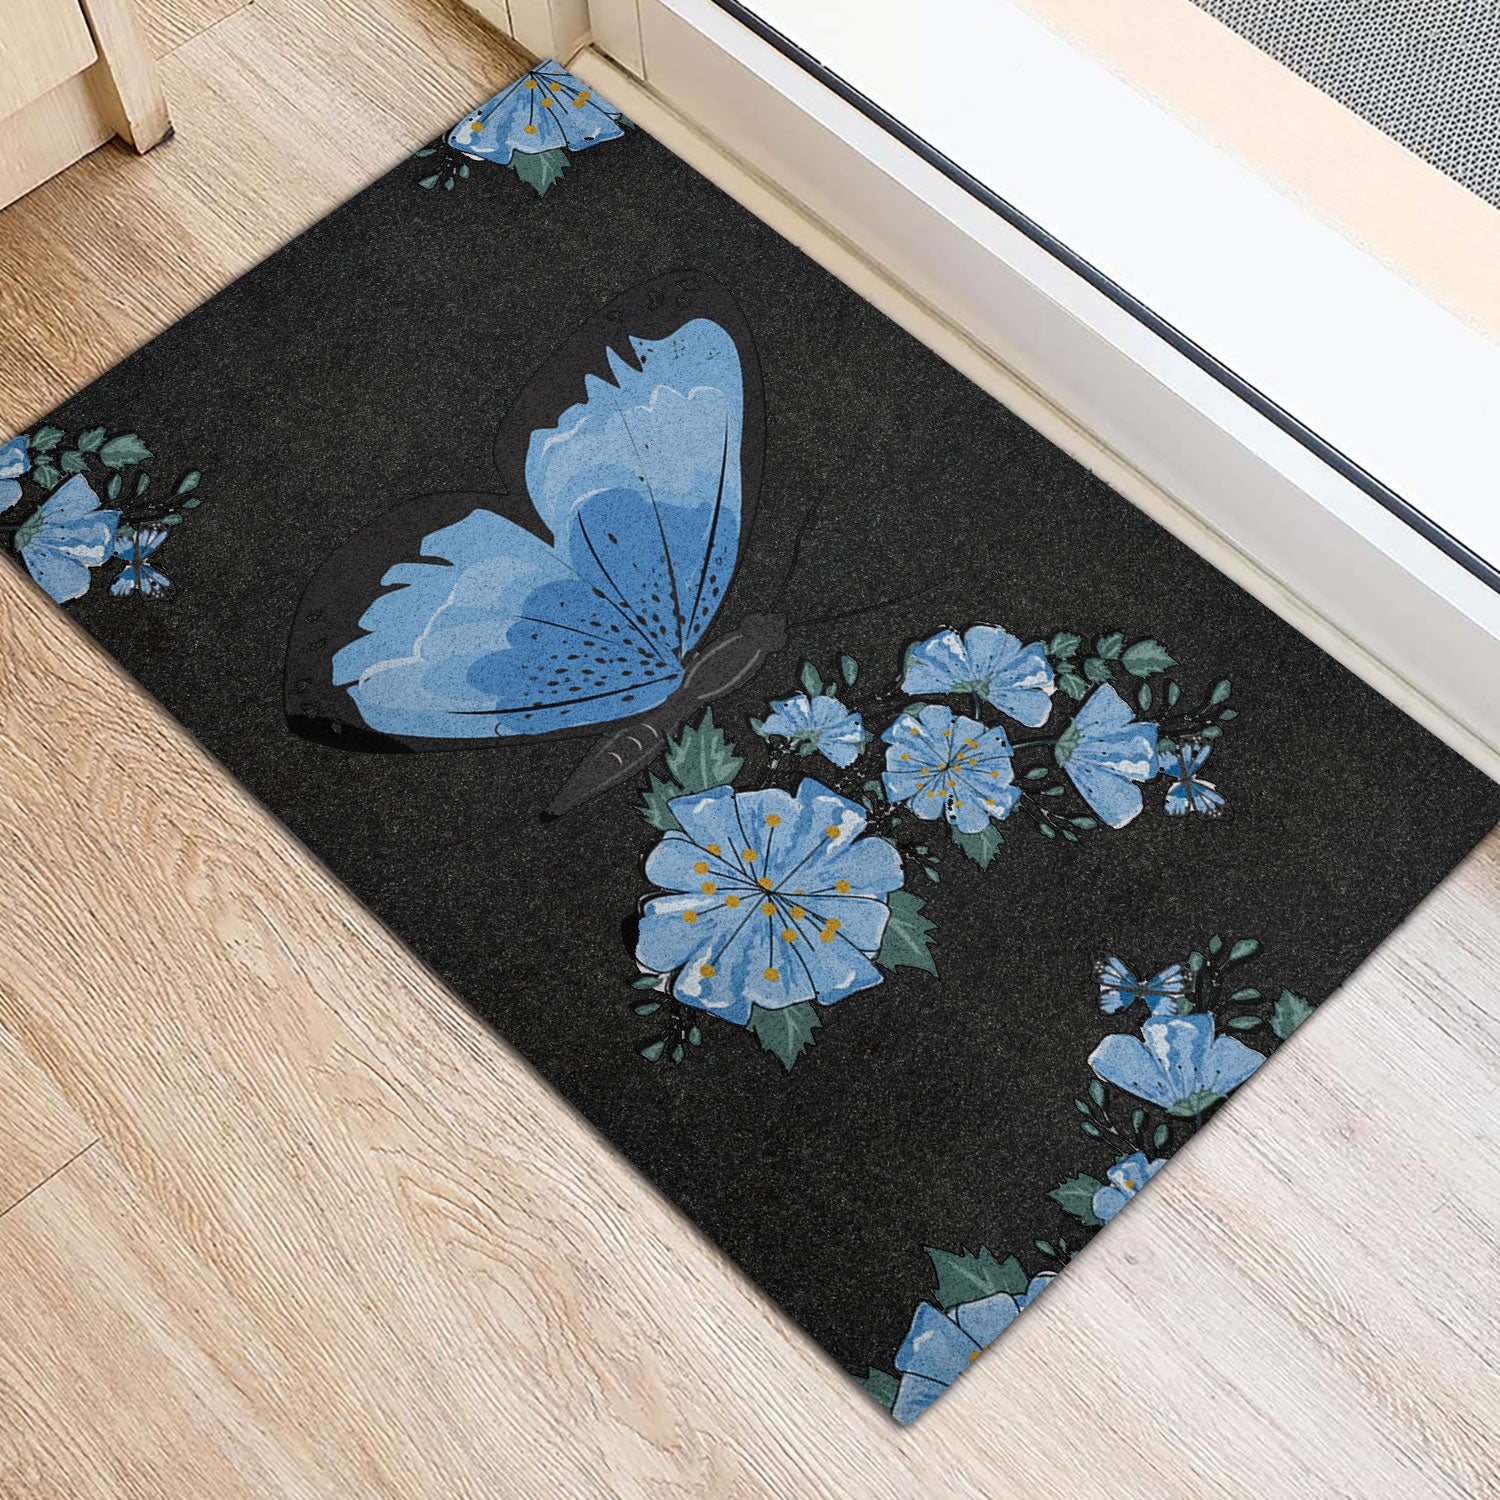 Ohaprints-Doormat-Outdoor-Indoor-Butterfly-Blue-Flower-Butterflies-Flowers-Floral-Black-Rubber-Door-Mat-644-